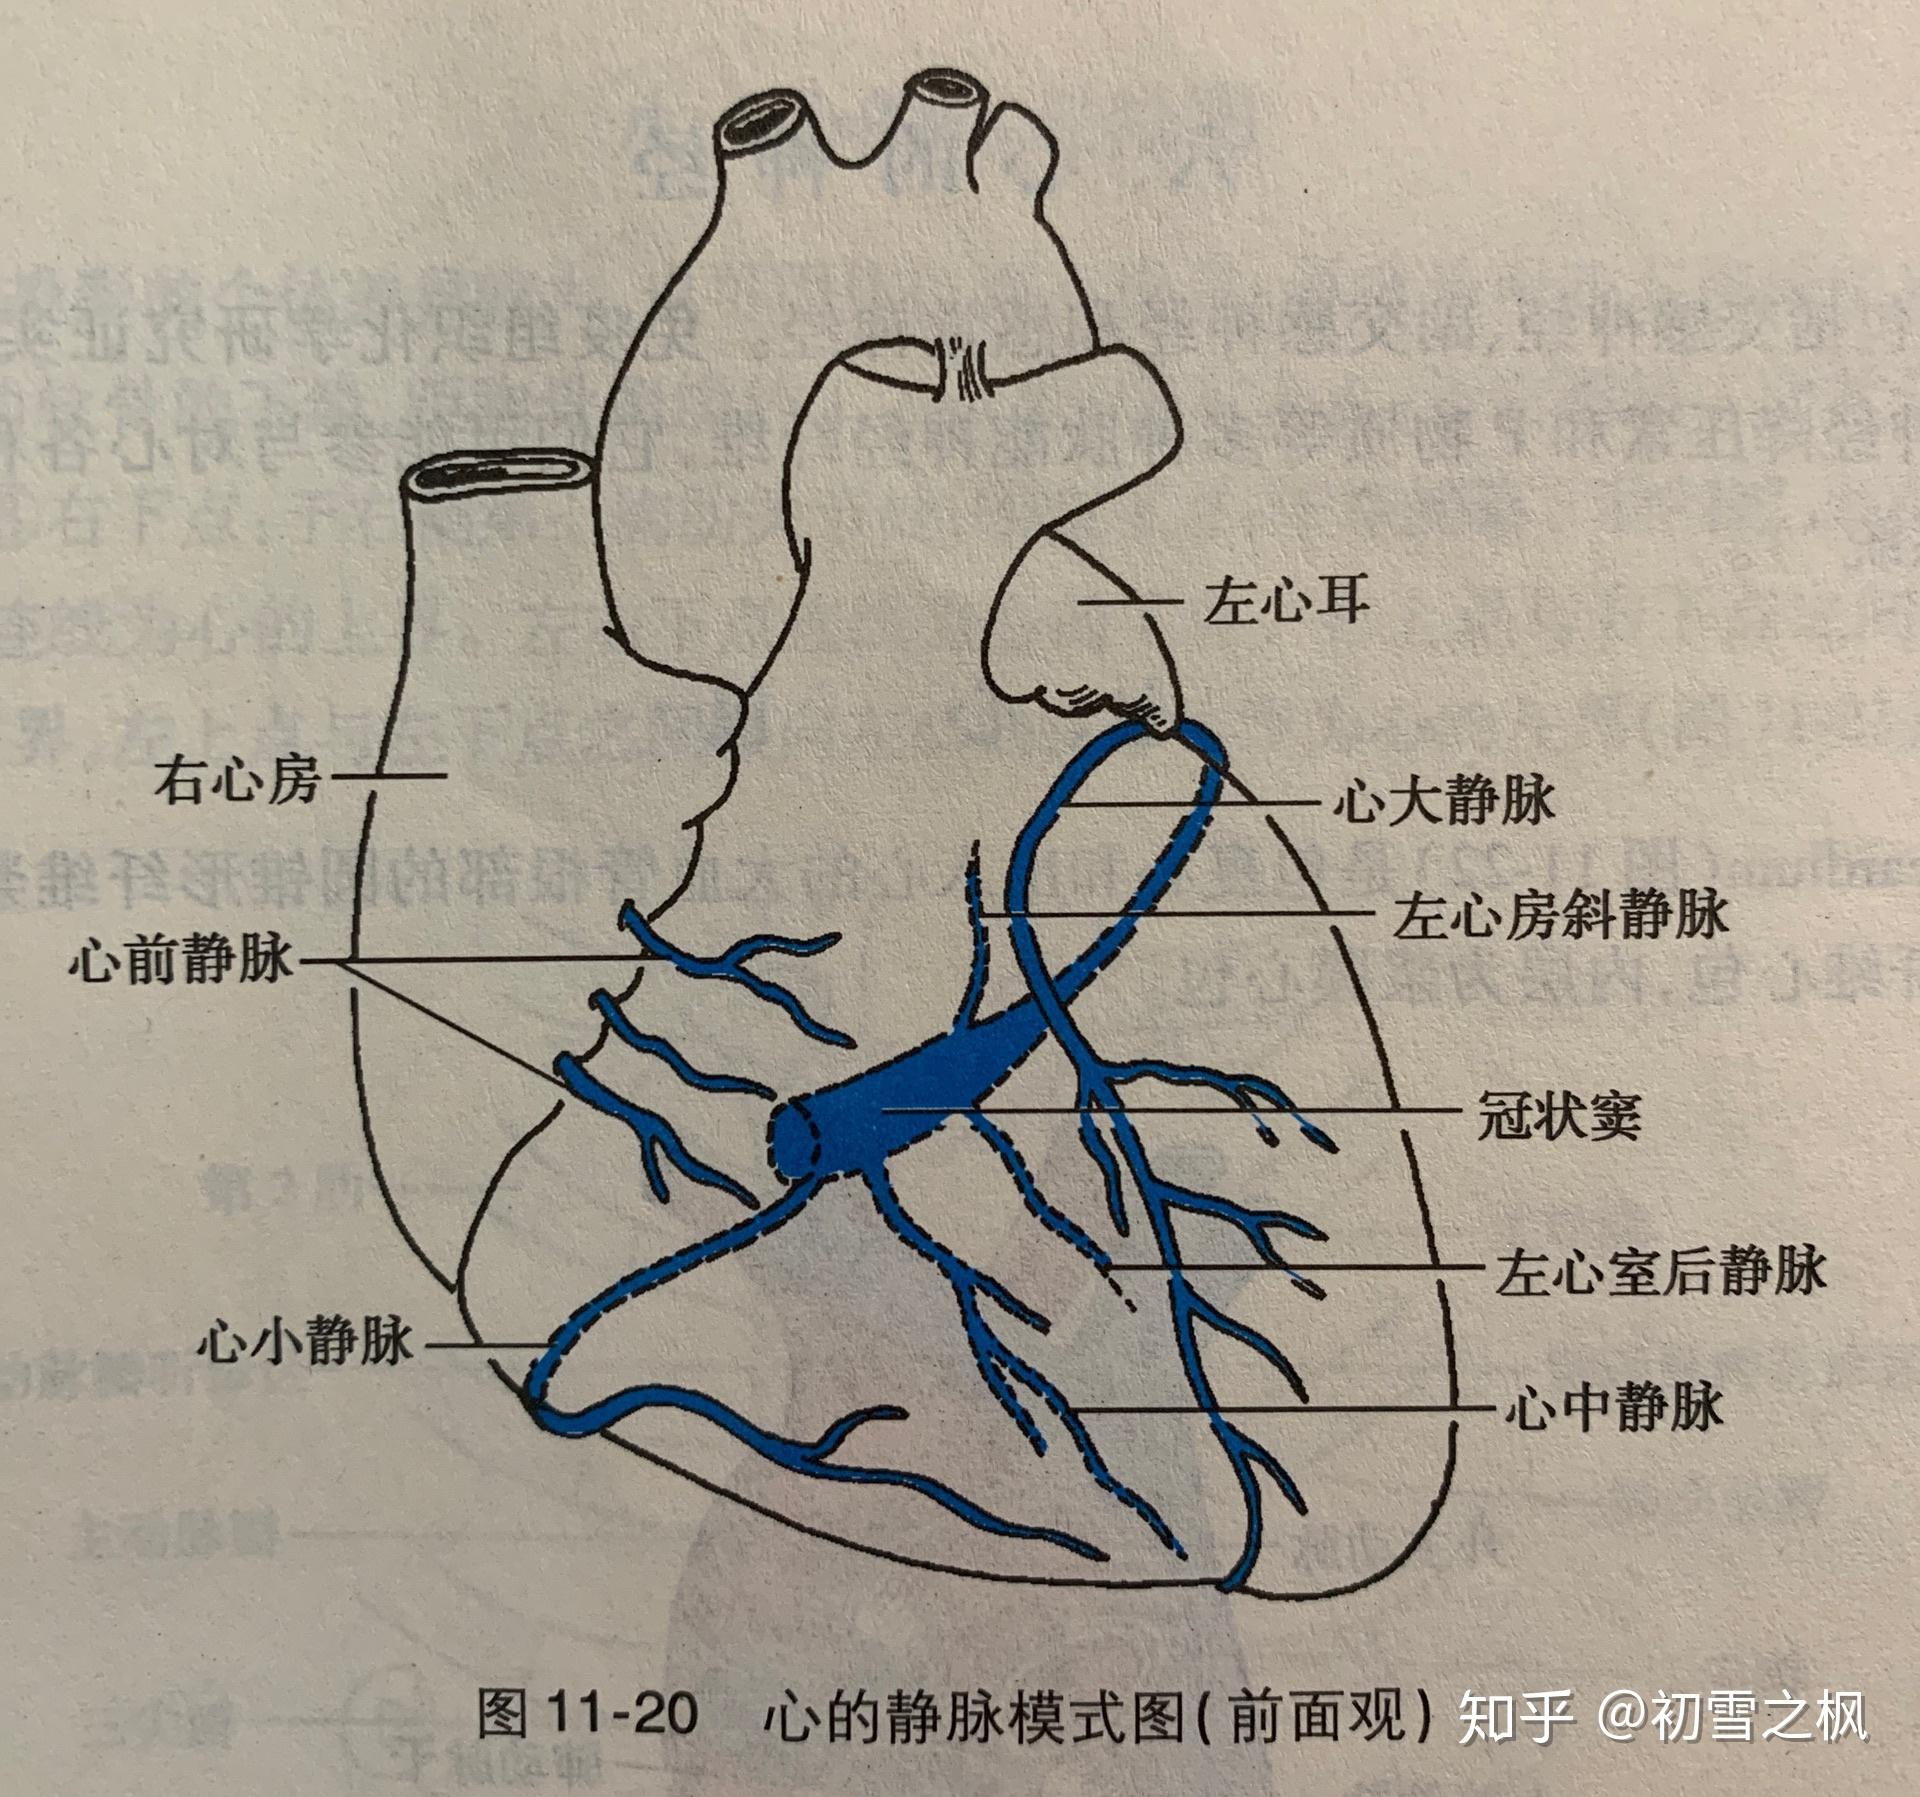 心脏解剖图冠状静脉图片